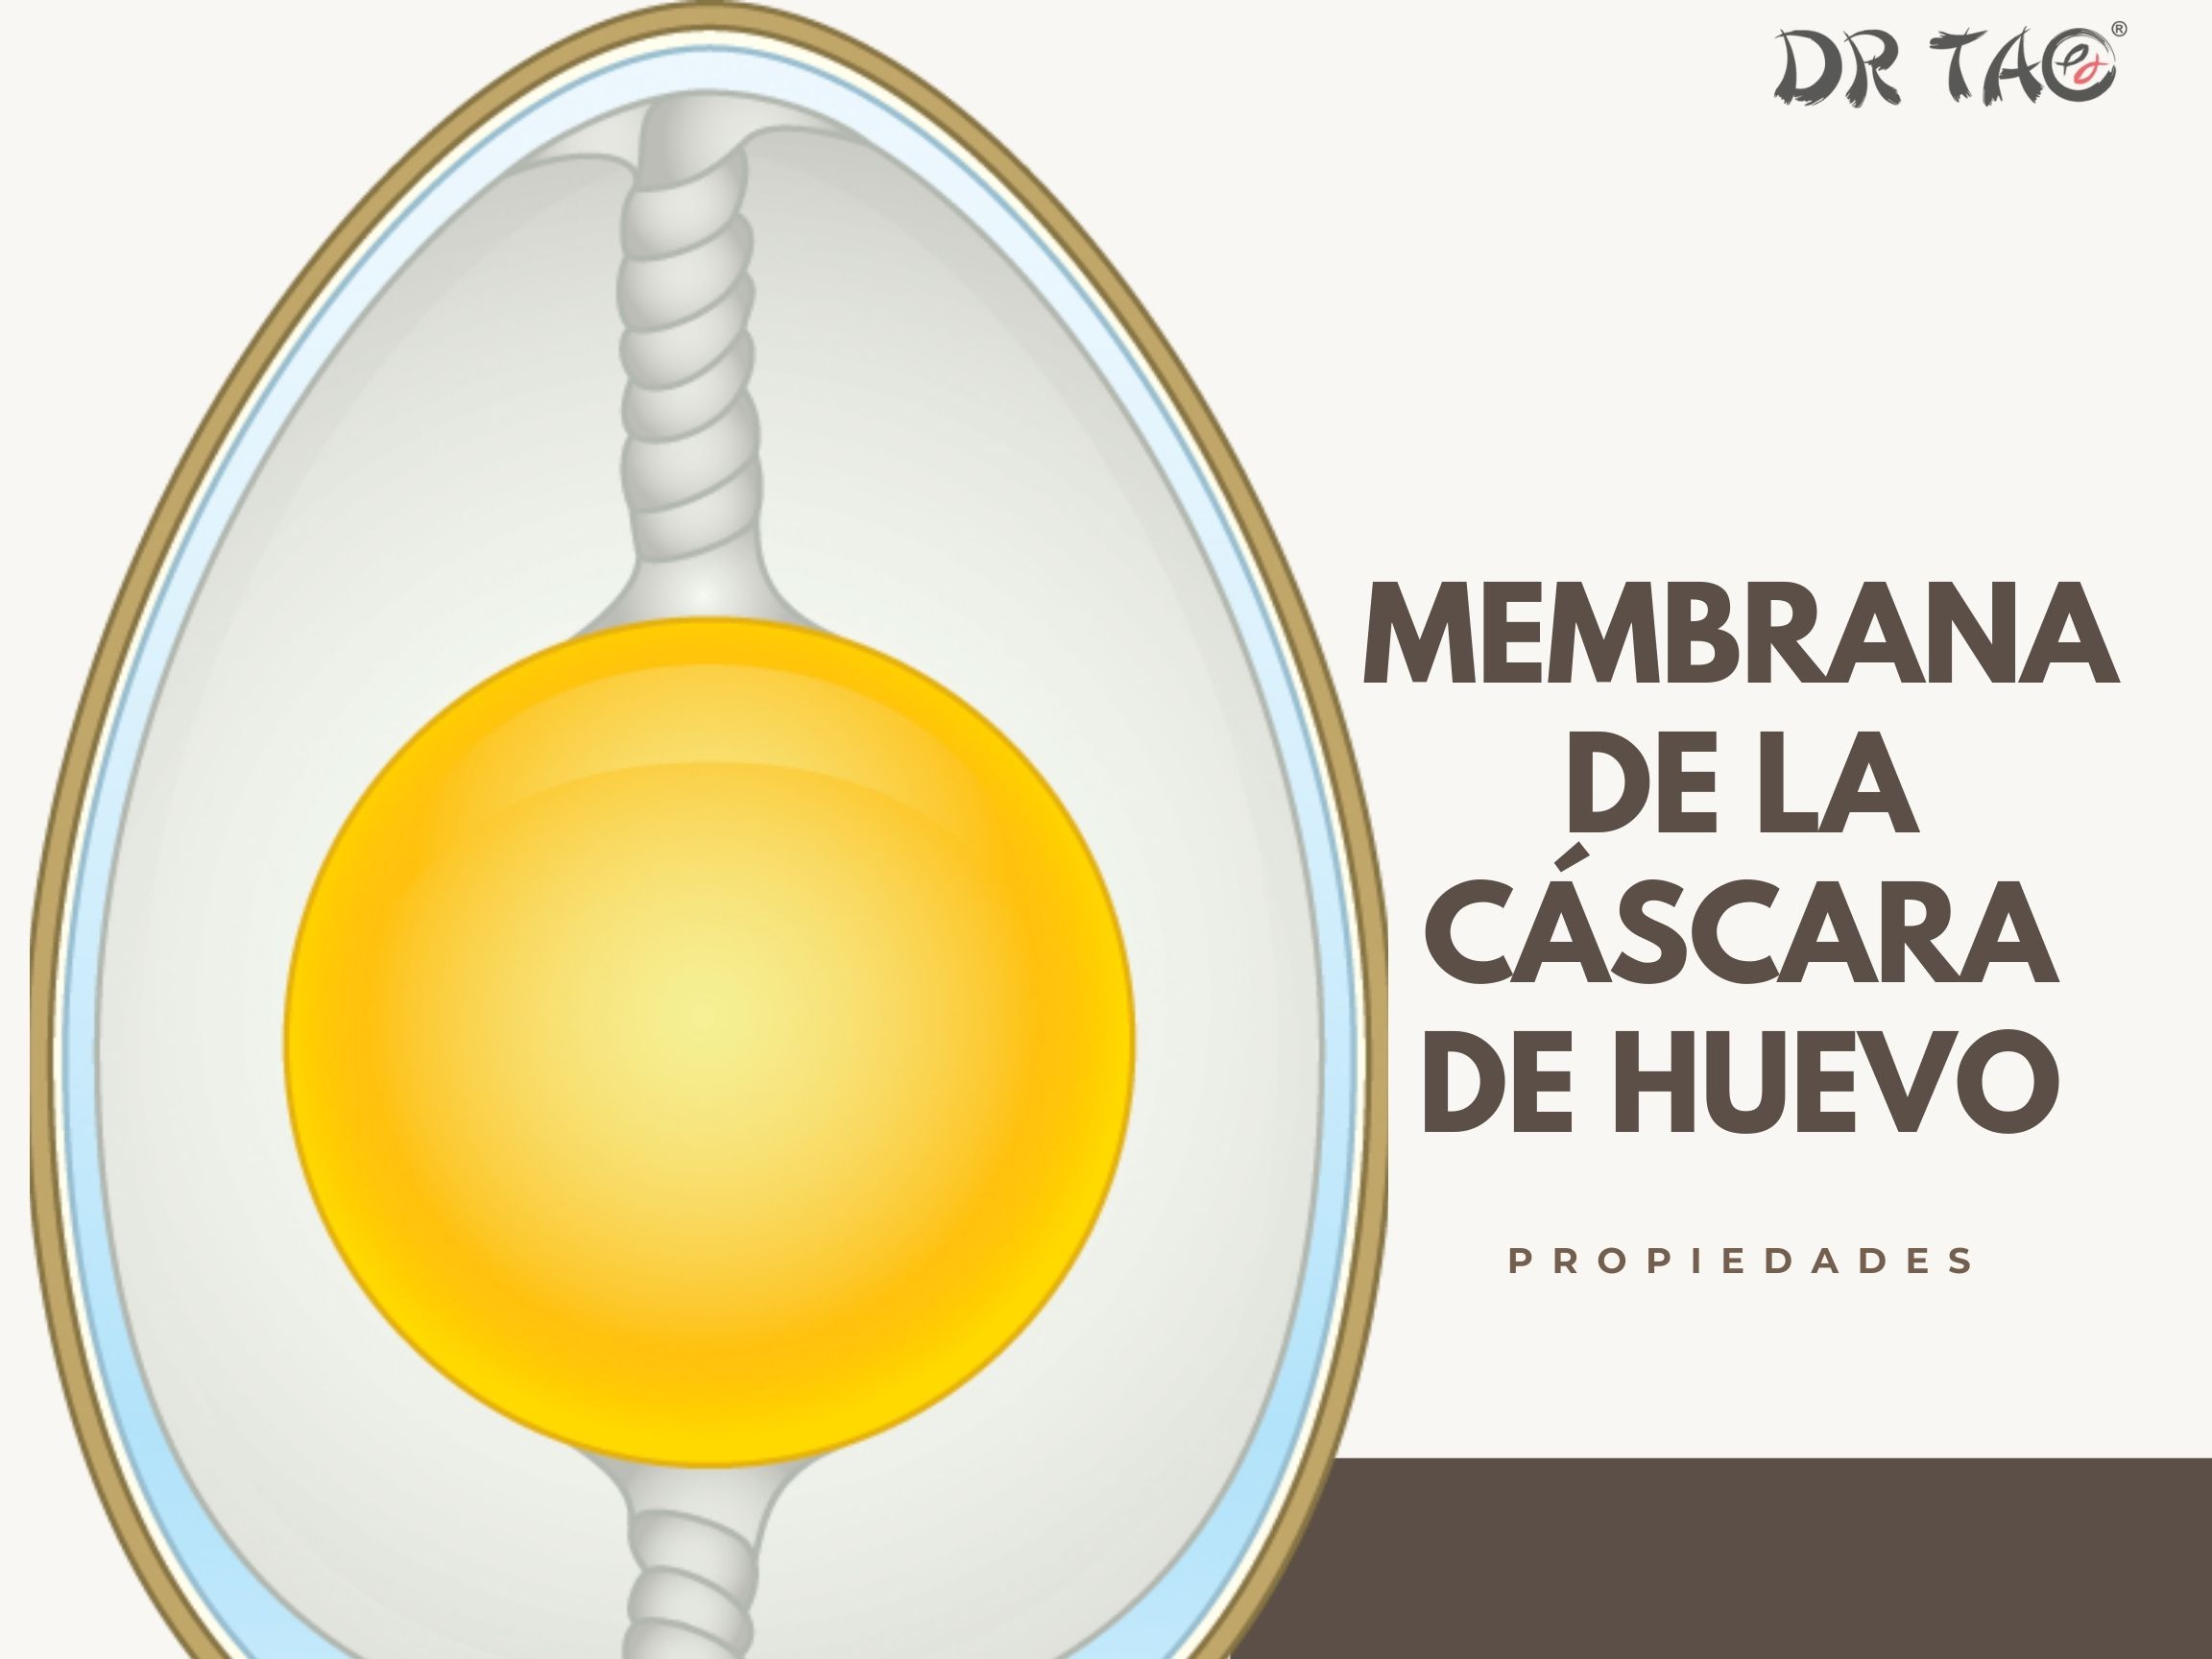 La membrana de la cáscara de huevo contiene proteínas que mejora el envejecimiento celular de la piel, cabello, uñas, etc.